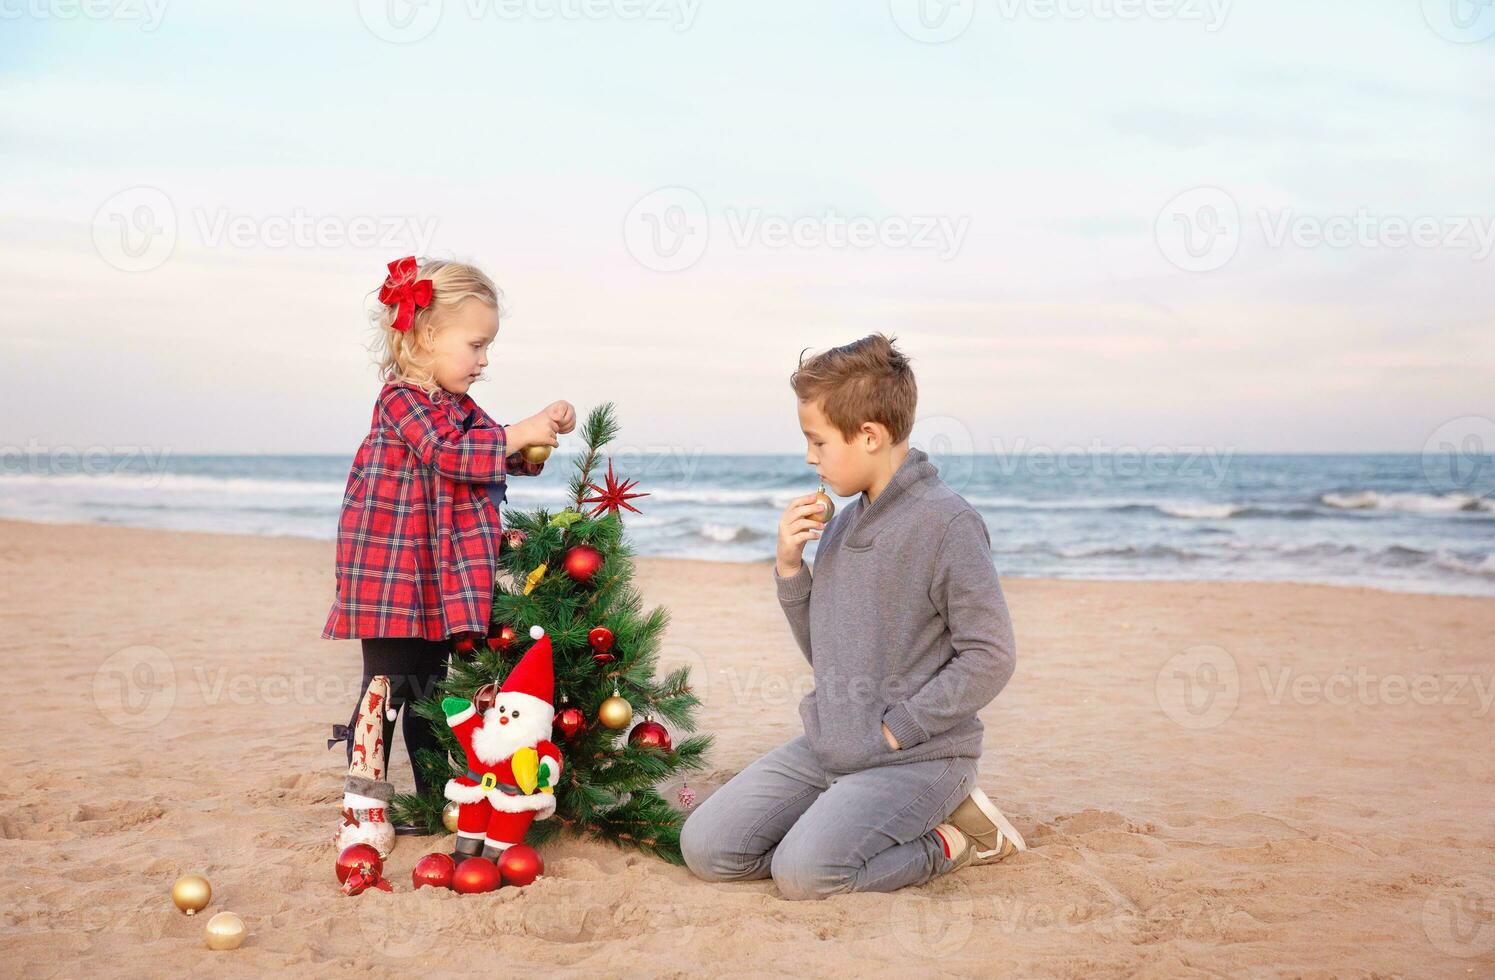 consiguiendo Listo para Navidad vacaciones. familia fiesta en el playa foto